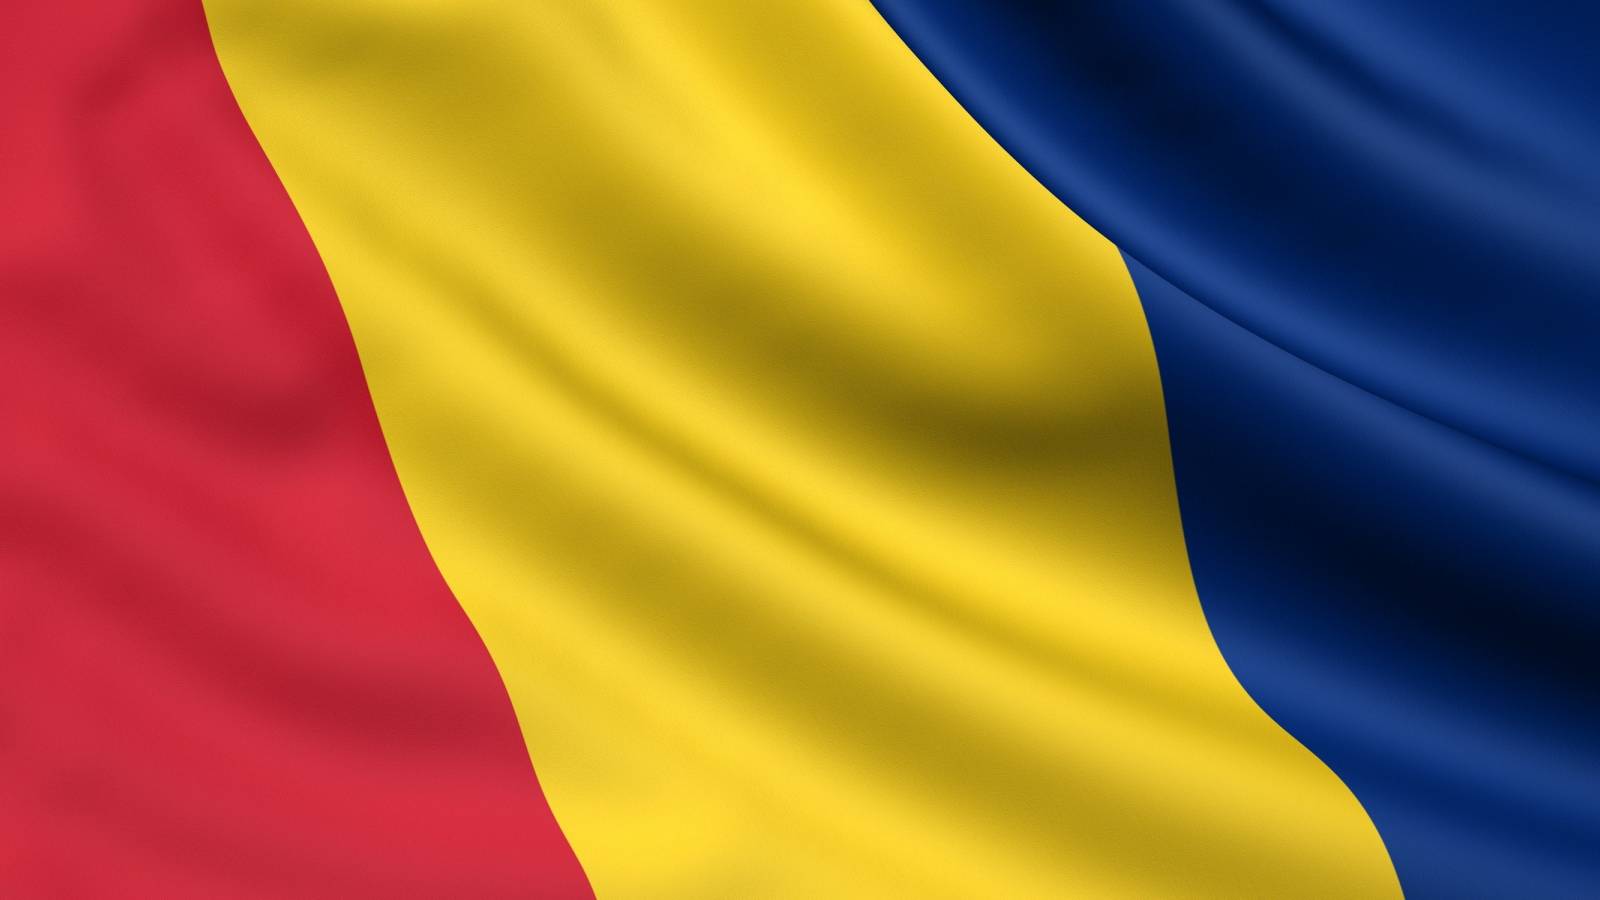 Annos 4 anti-COVID-rokote annetaan virallisesti nyt Romaniassa